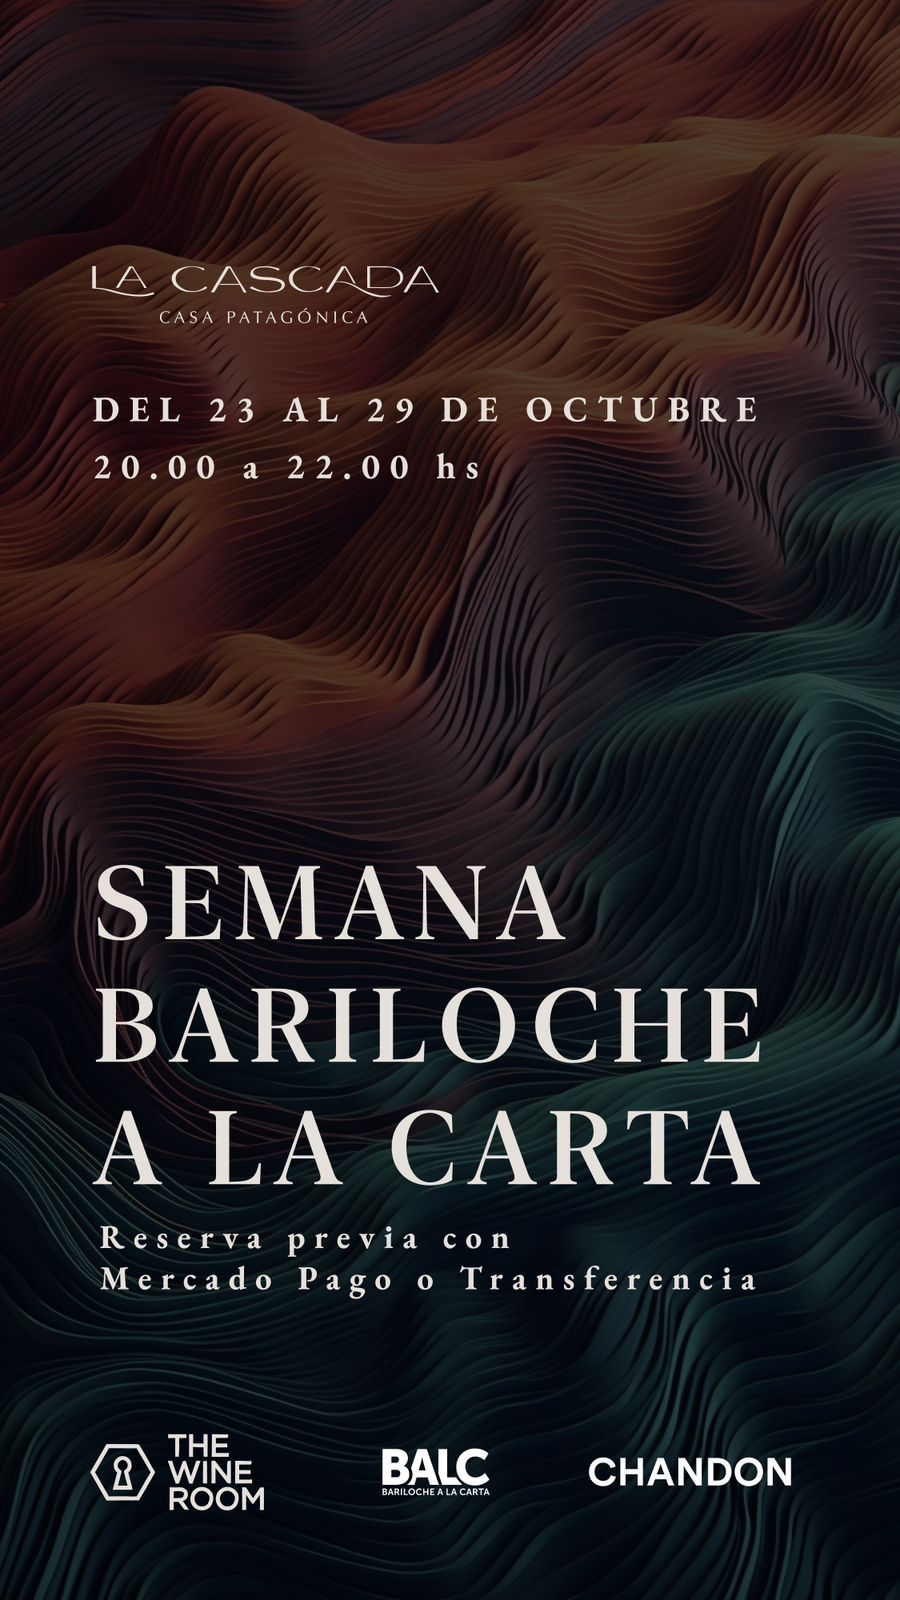 La Cascada Casa Patagónica by DON se suma a Bariloche a la Carta